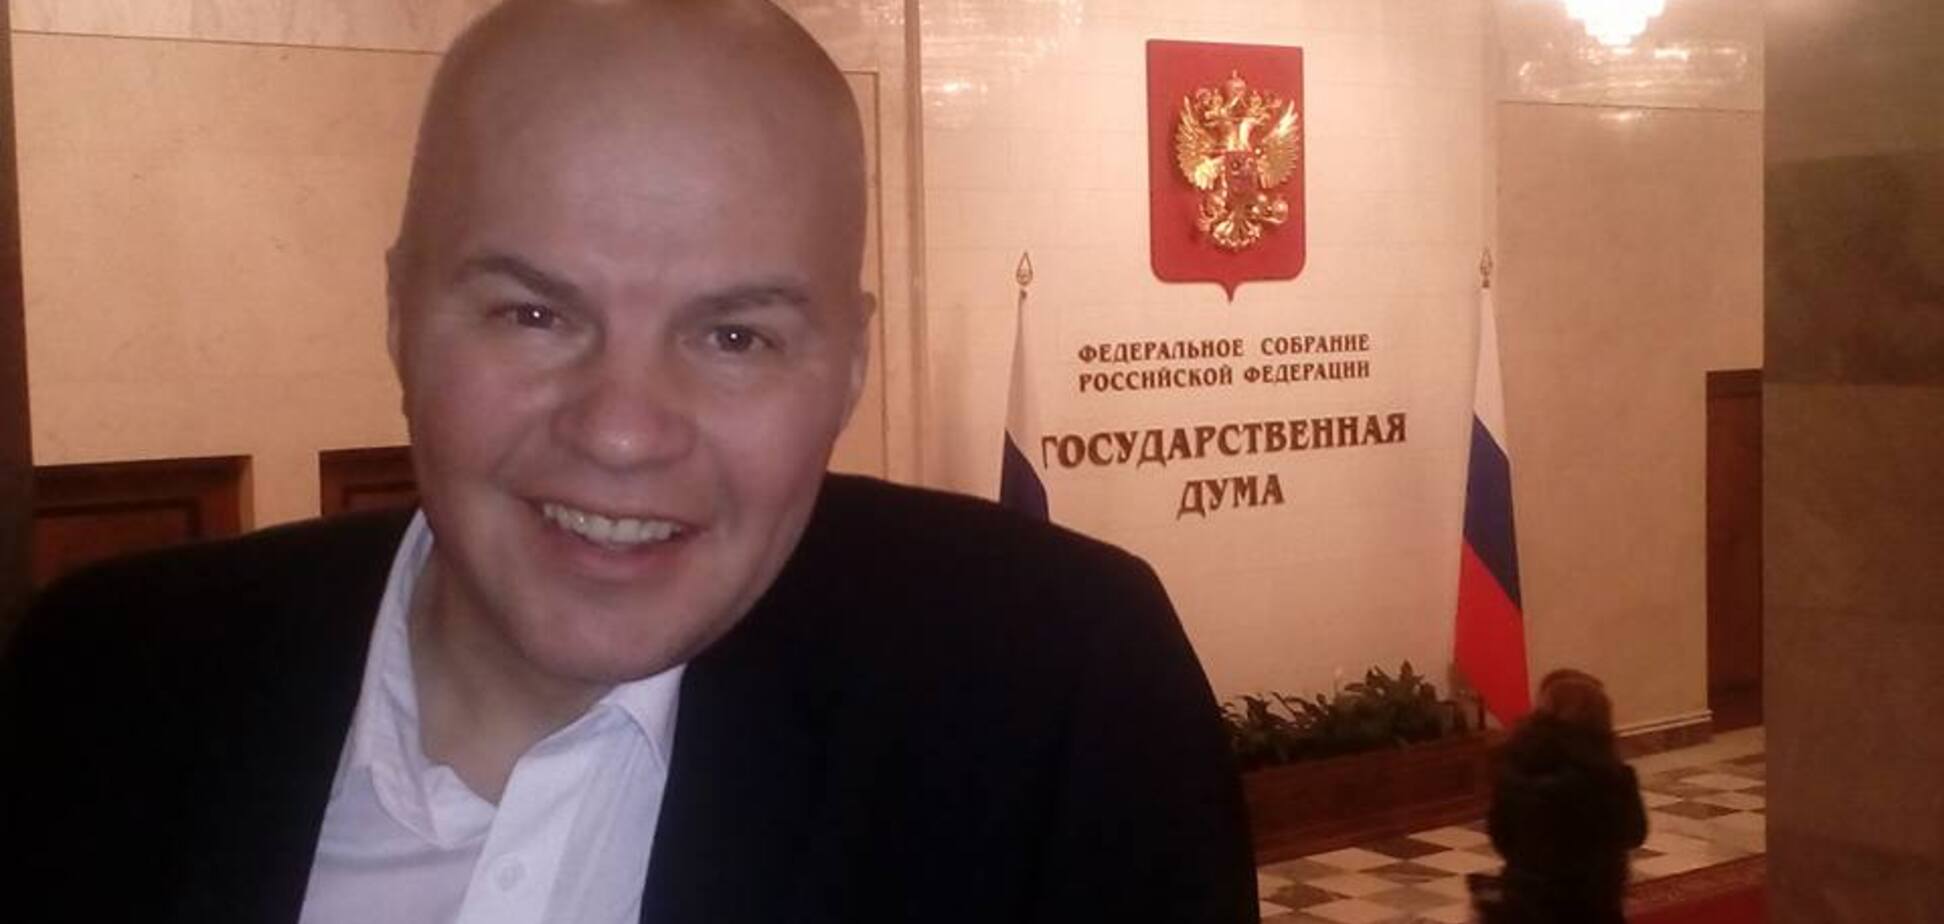 Украинская звезда КремльТВ встретилась с ненавидящим Украину депутатом Госдумы